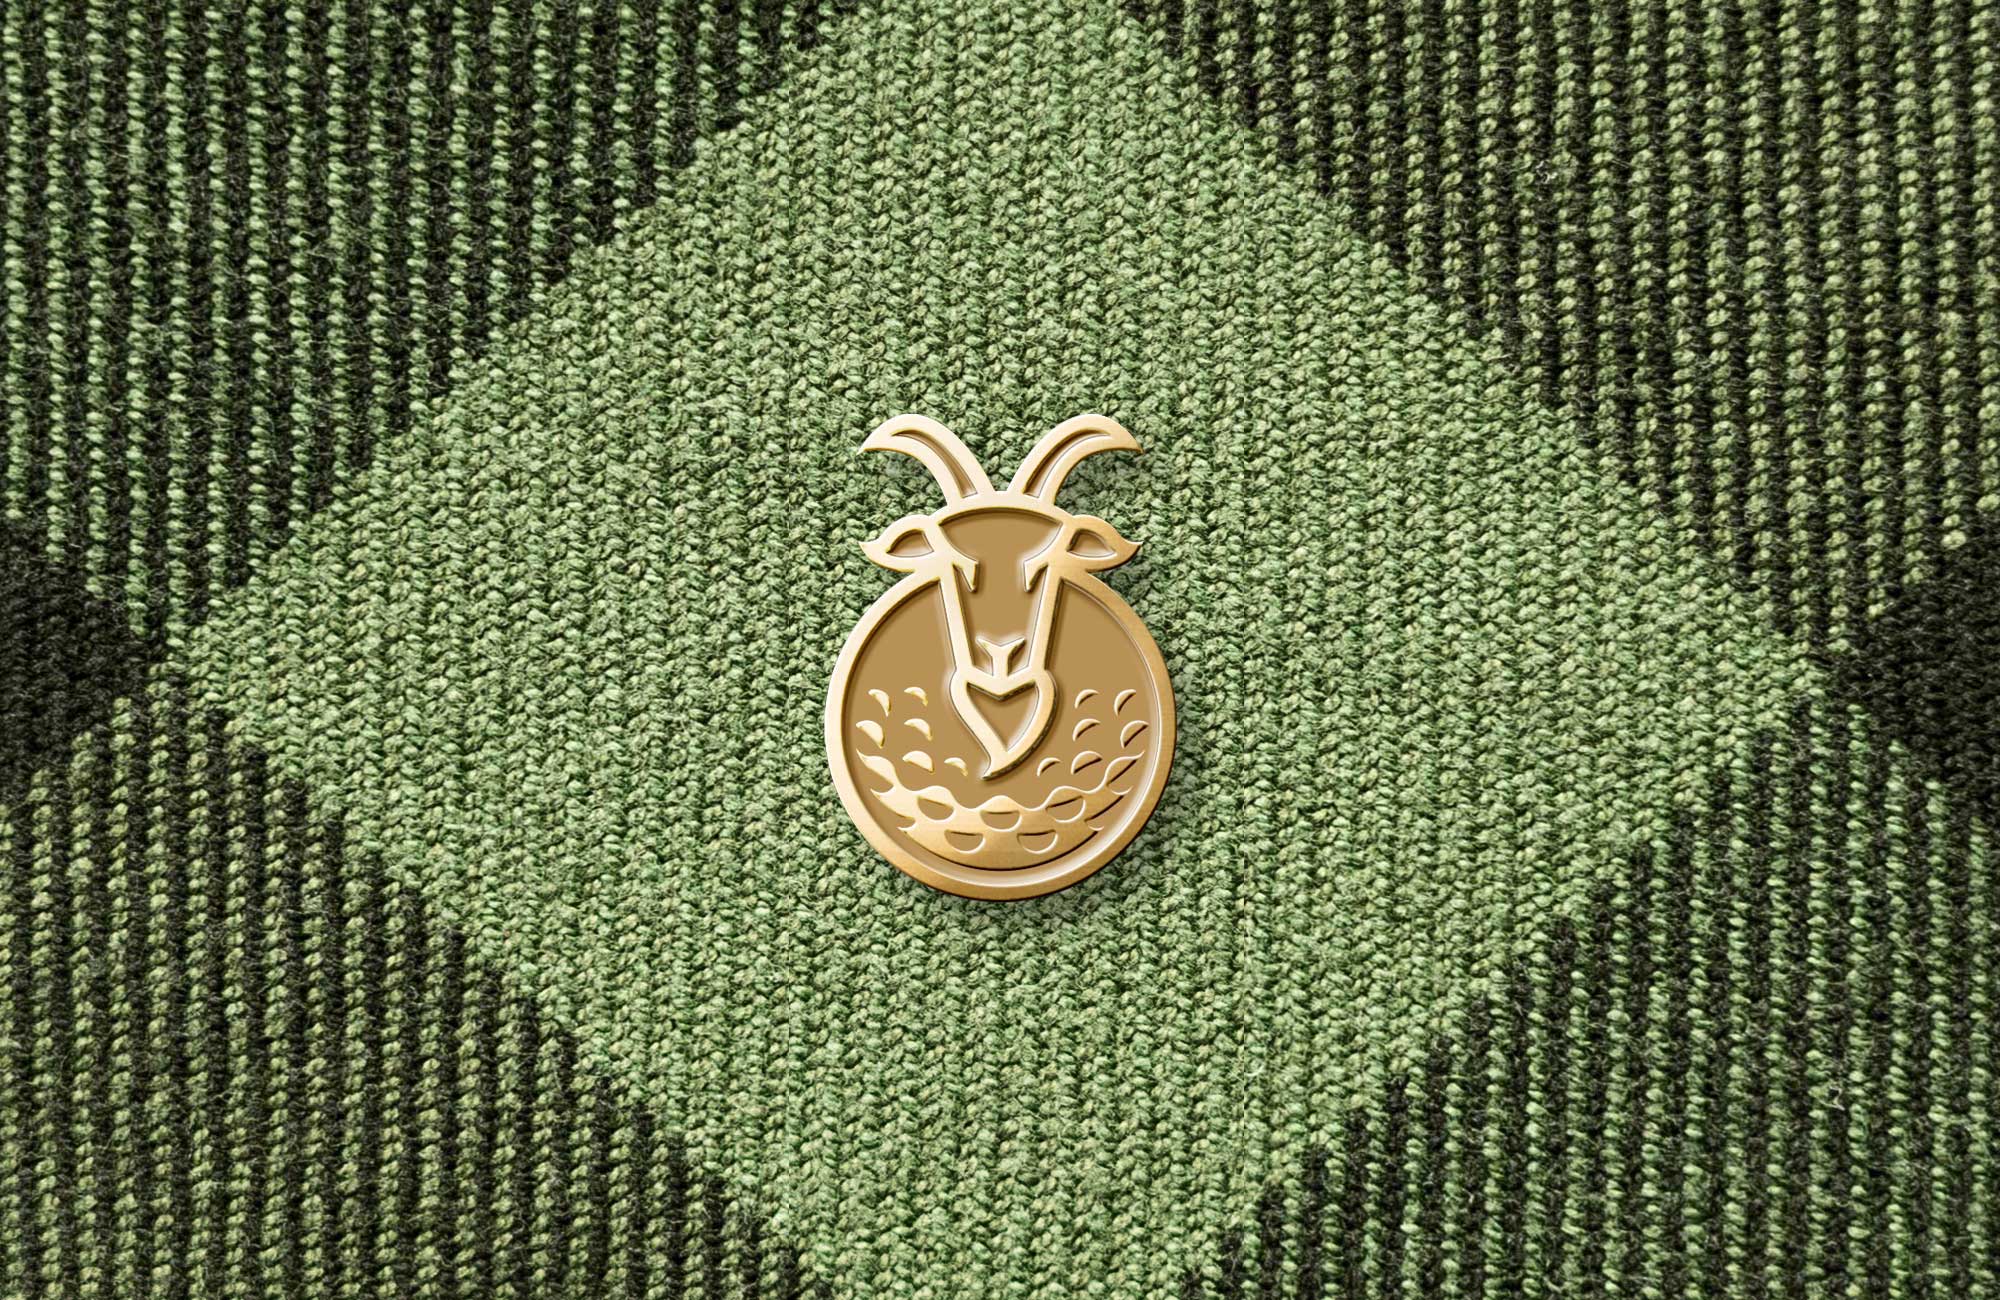 goat enamel pin design